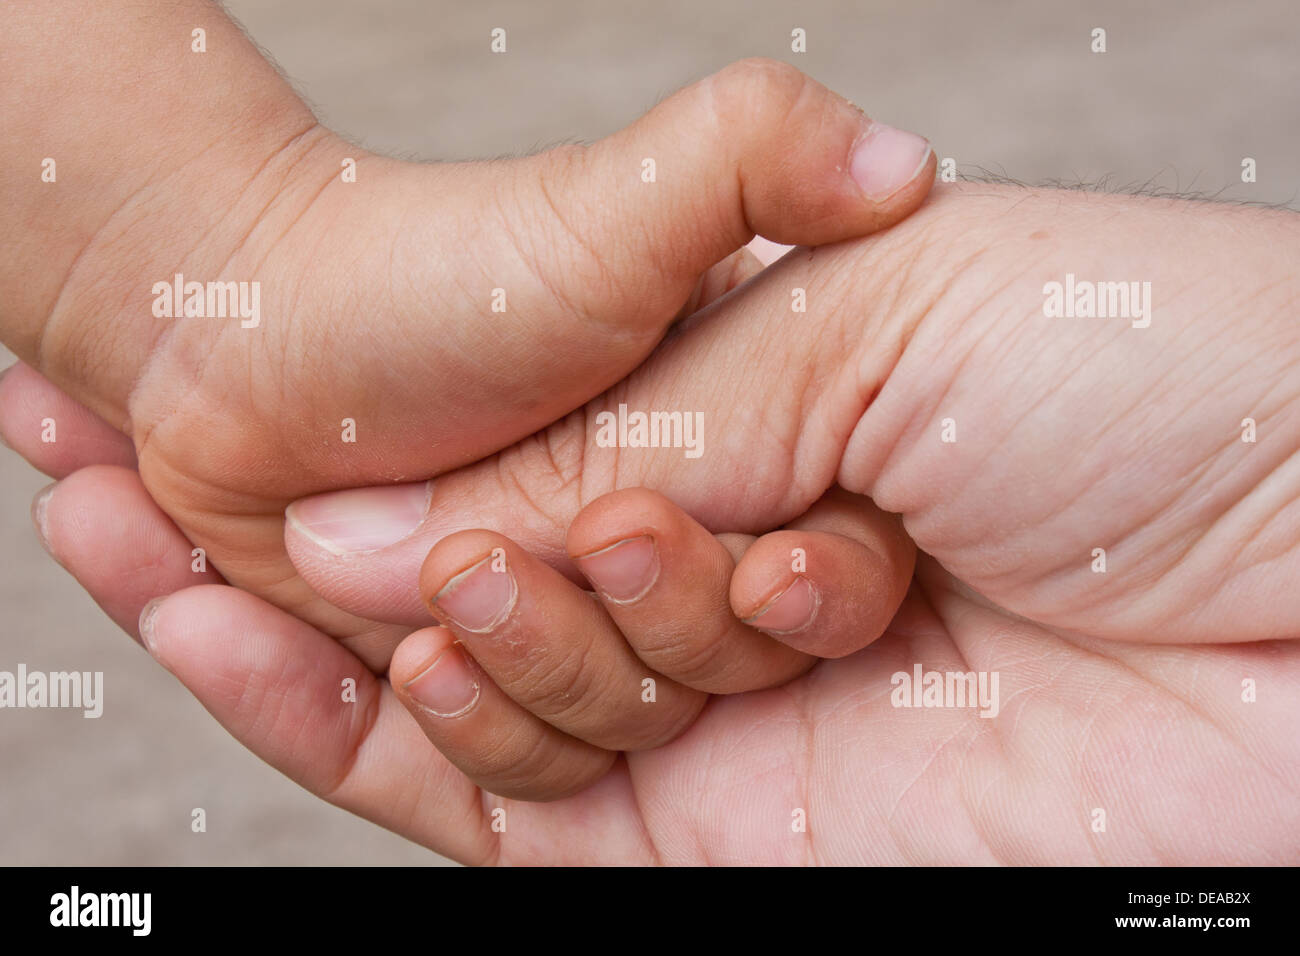 Assistenza braccio baby cura del corpo carezza bambino infanzia comfort mano padre di famiglia dito unghie predilezione fragile gesto pollice Foto Stock